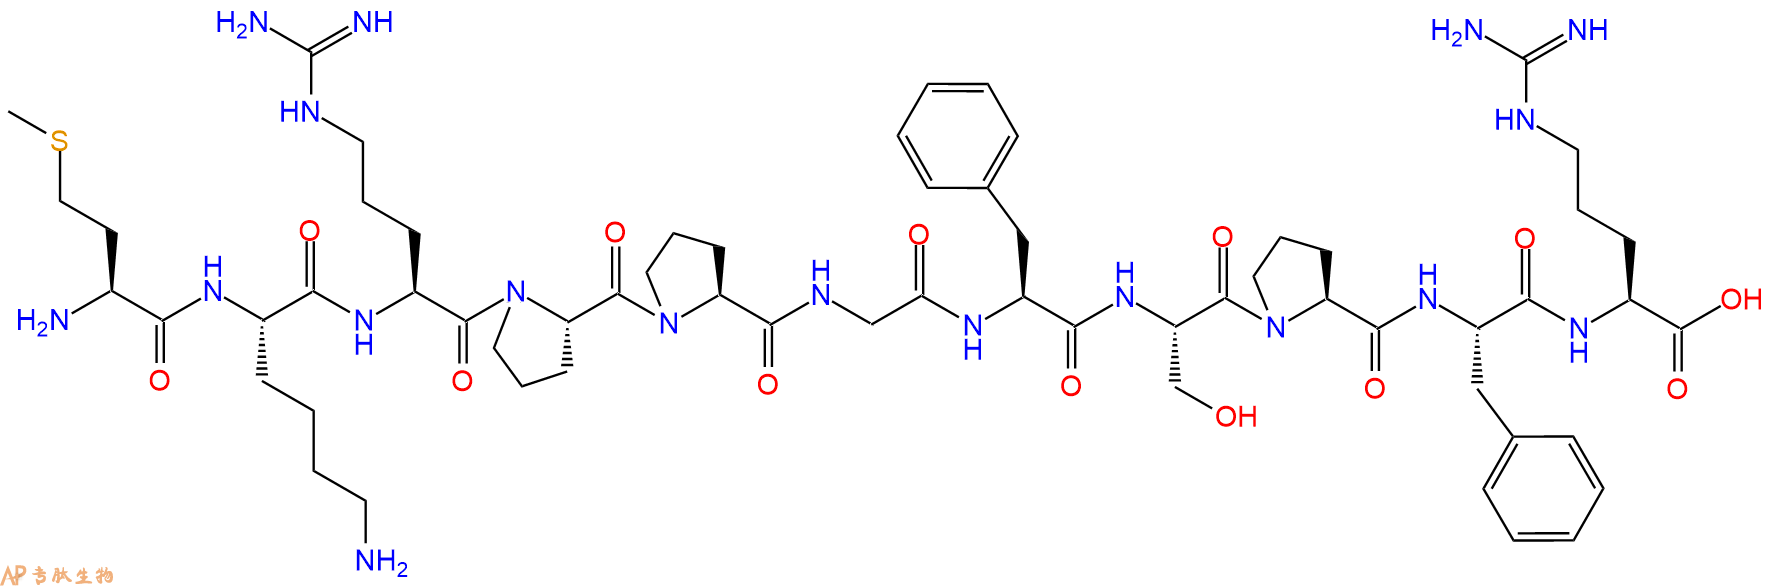 专肽生物产品基质金属蛋白酶MMP substrate、缓激肽[Met-Lys0]Bradykinin550-19-6